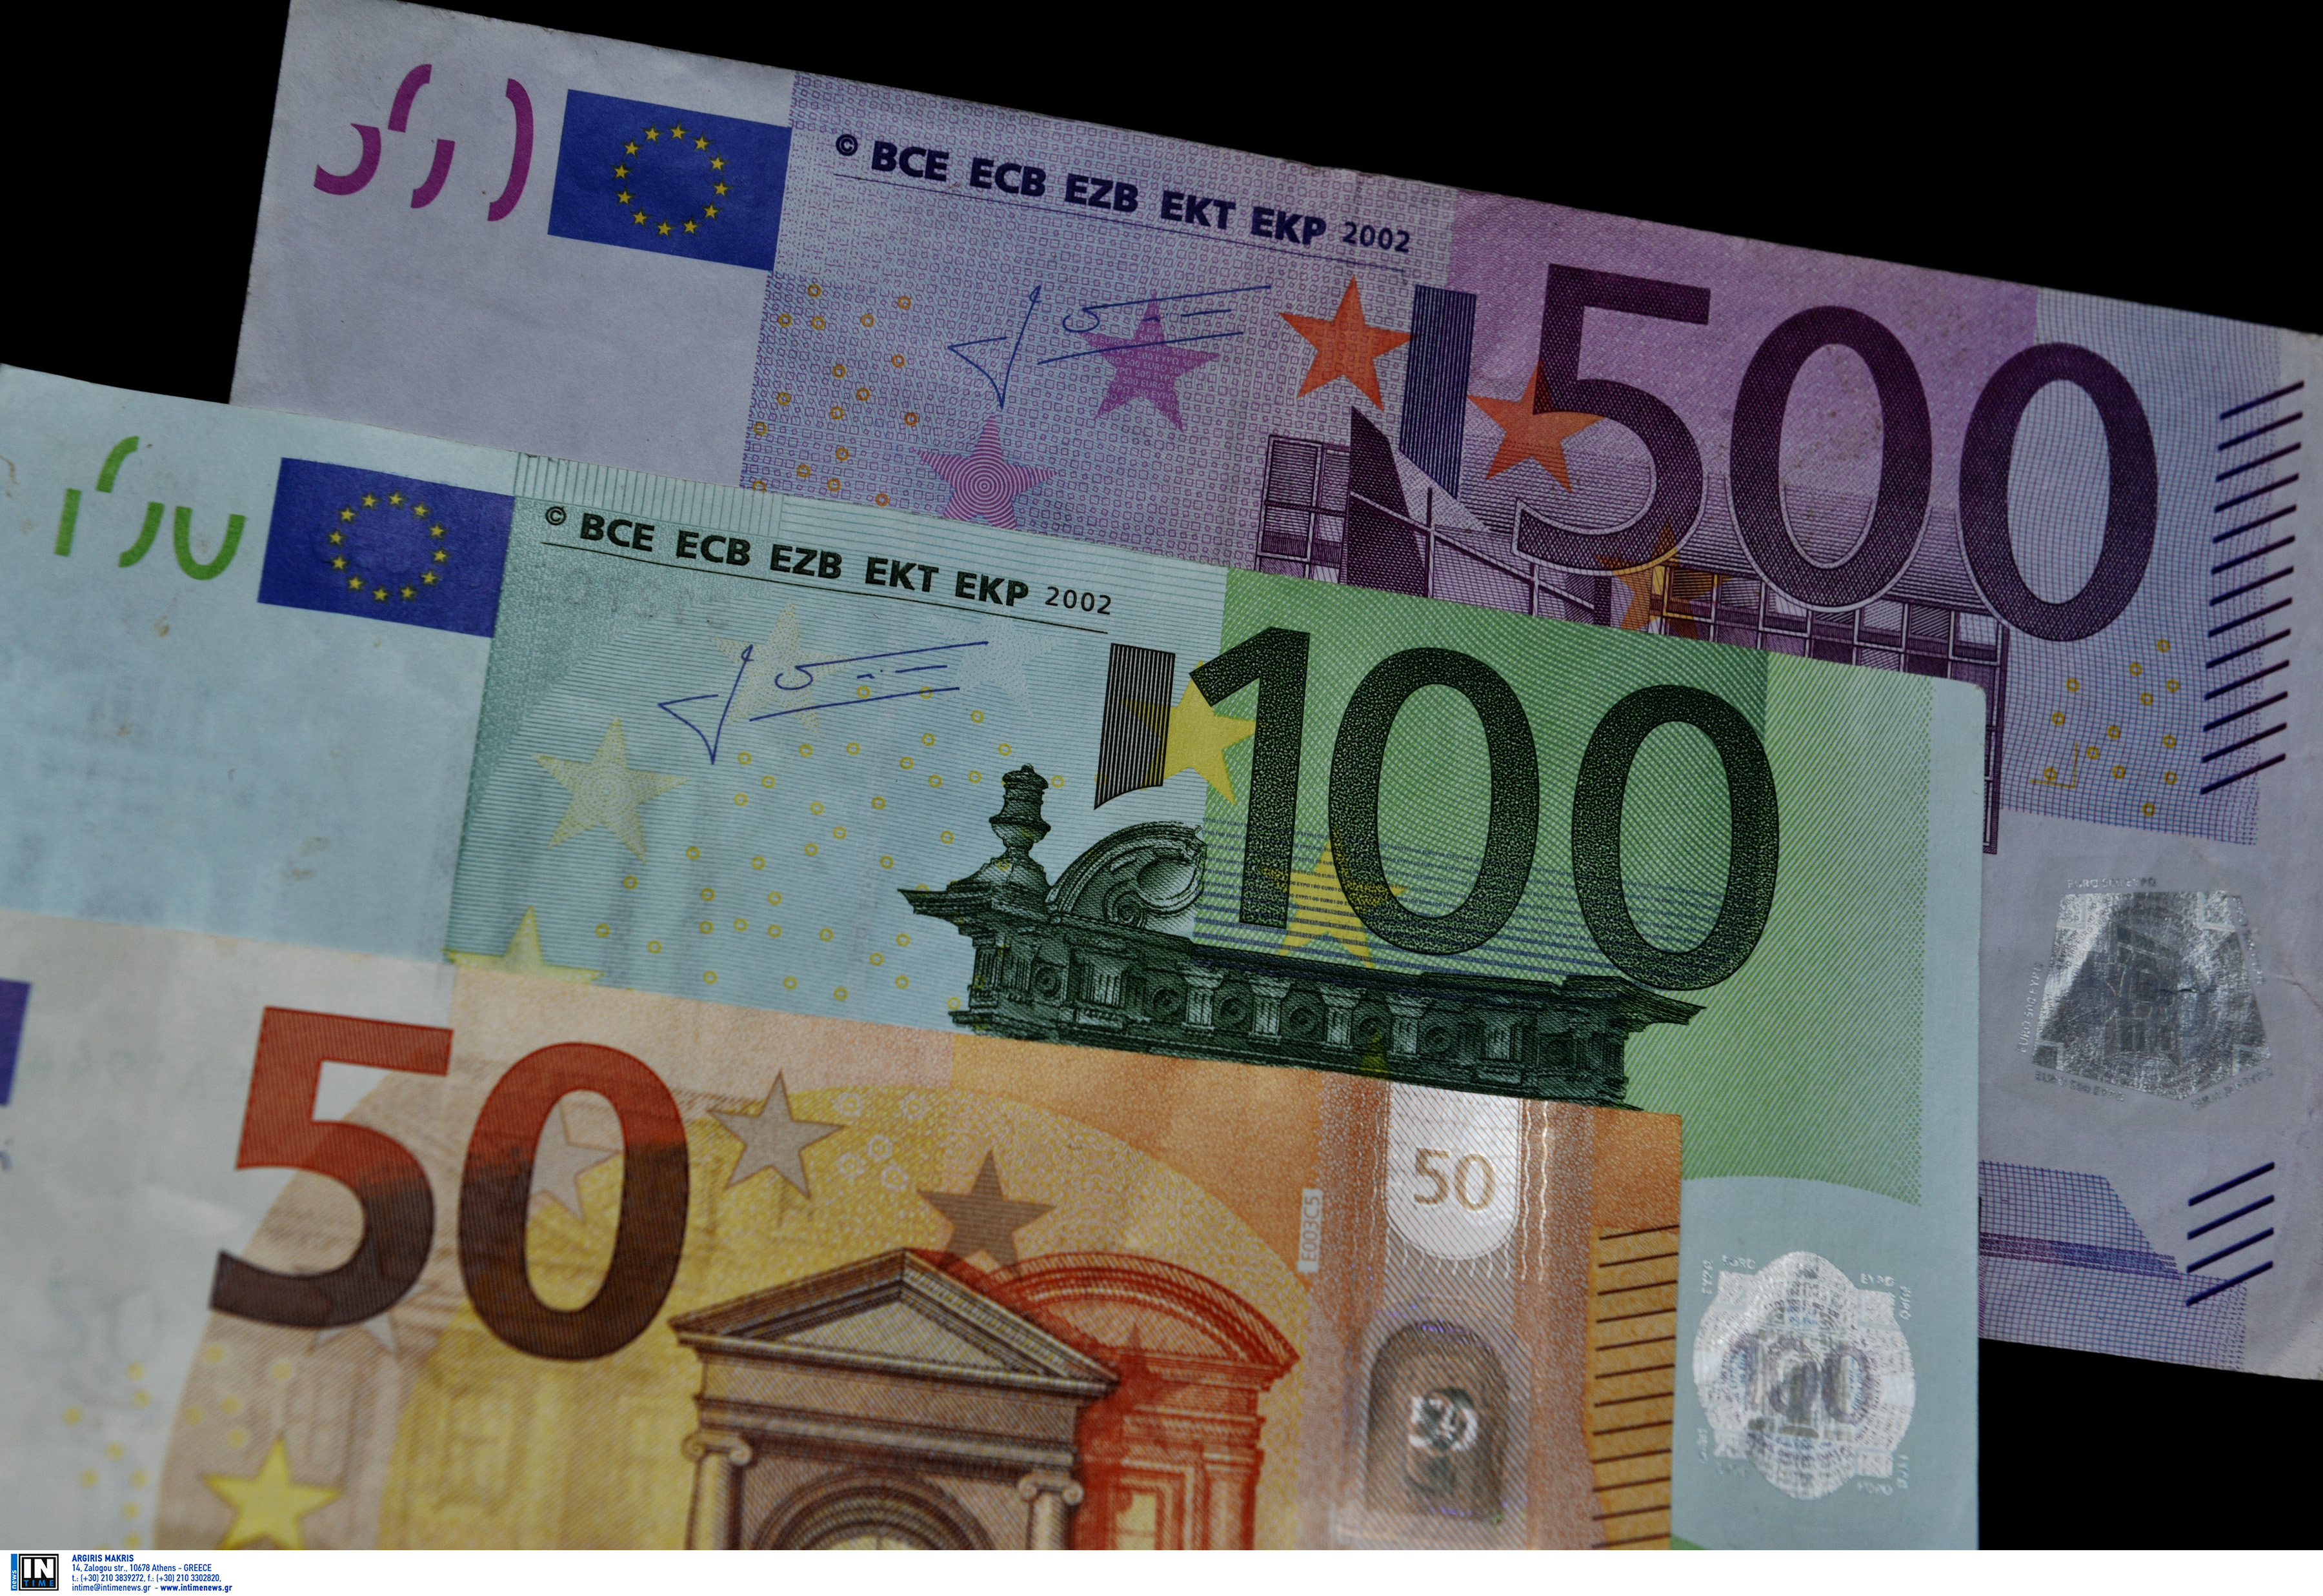 Κοζάνη: Η ευκαιρία που έβλεπε ήταν απάτη – “Κλαίει” τα 140 ευρώ που πείστηκε να δώσει!